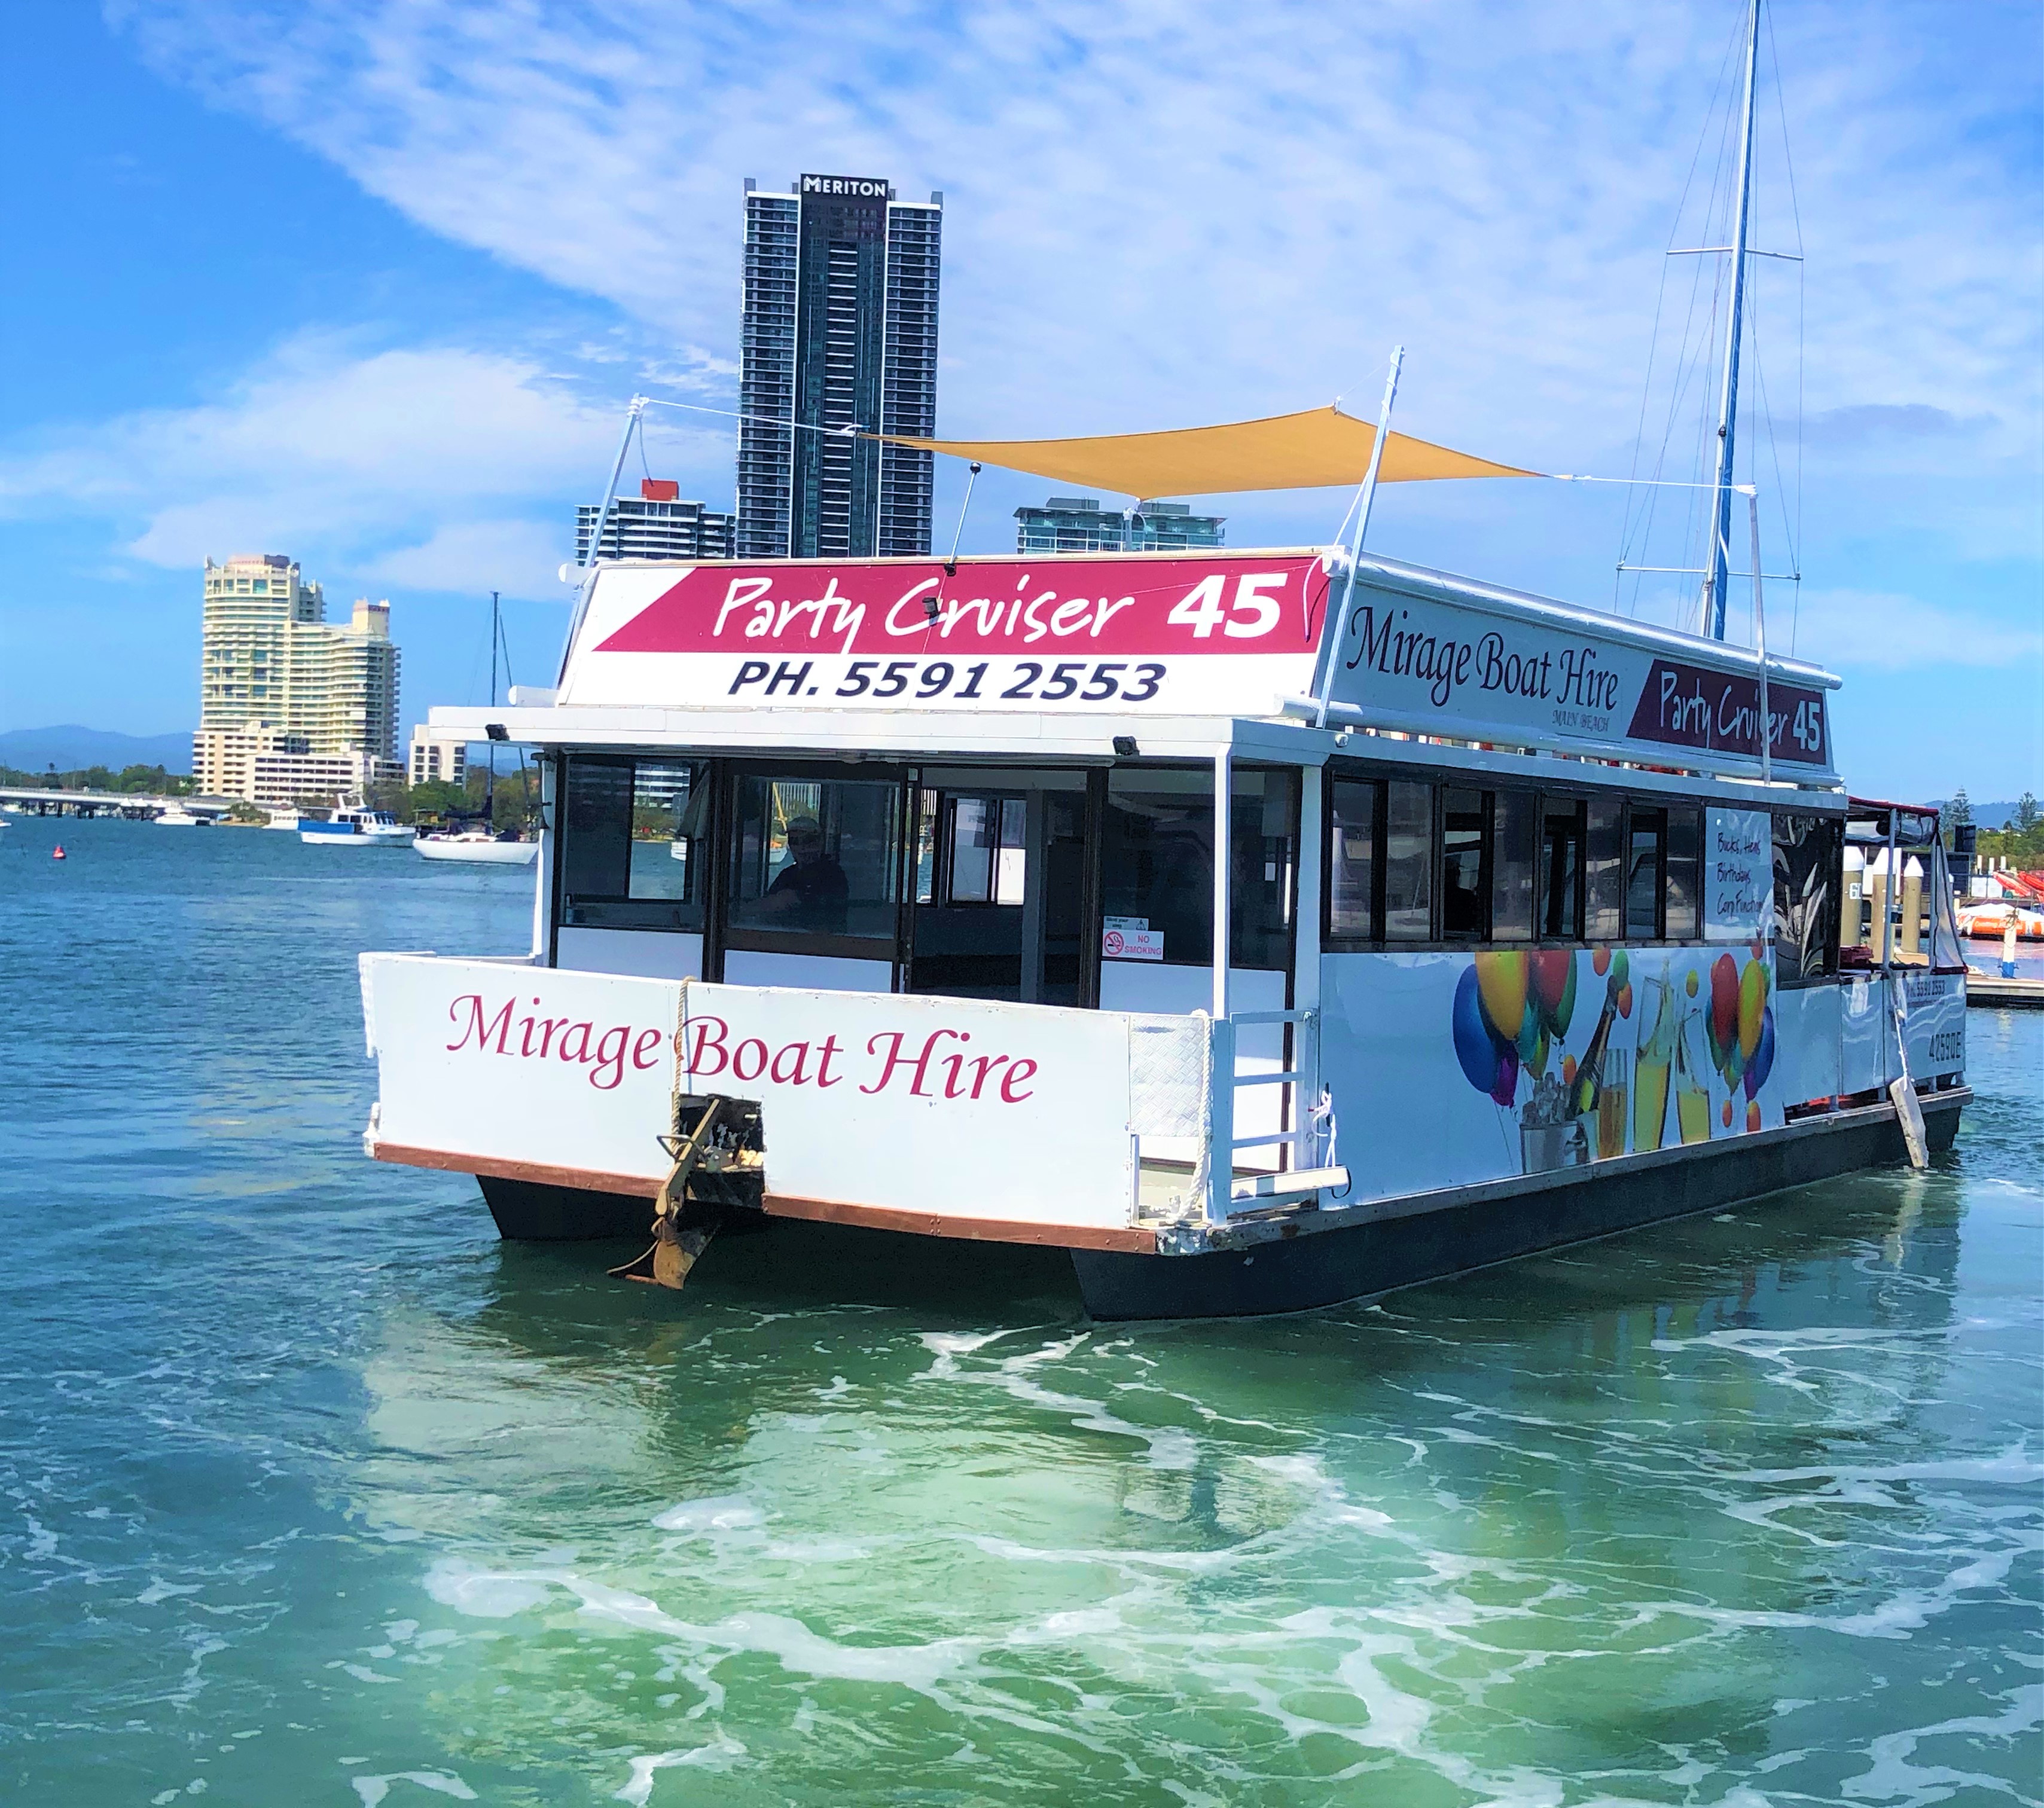 Mirage Boat Hire - Sydney Tourism 1